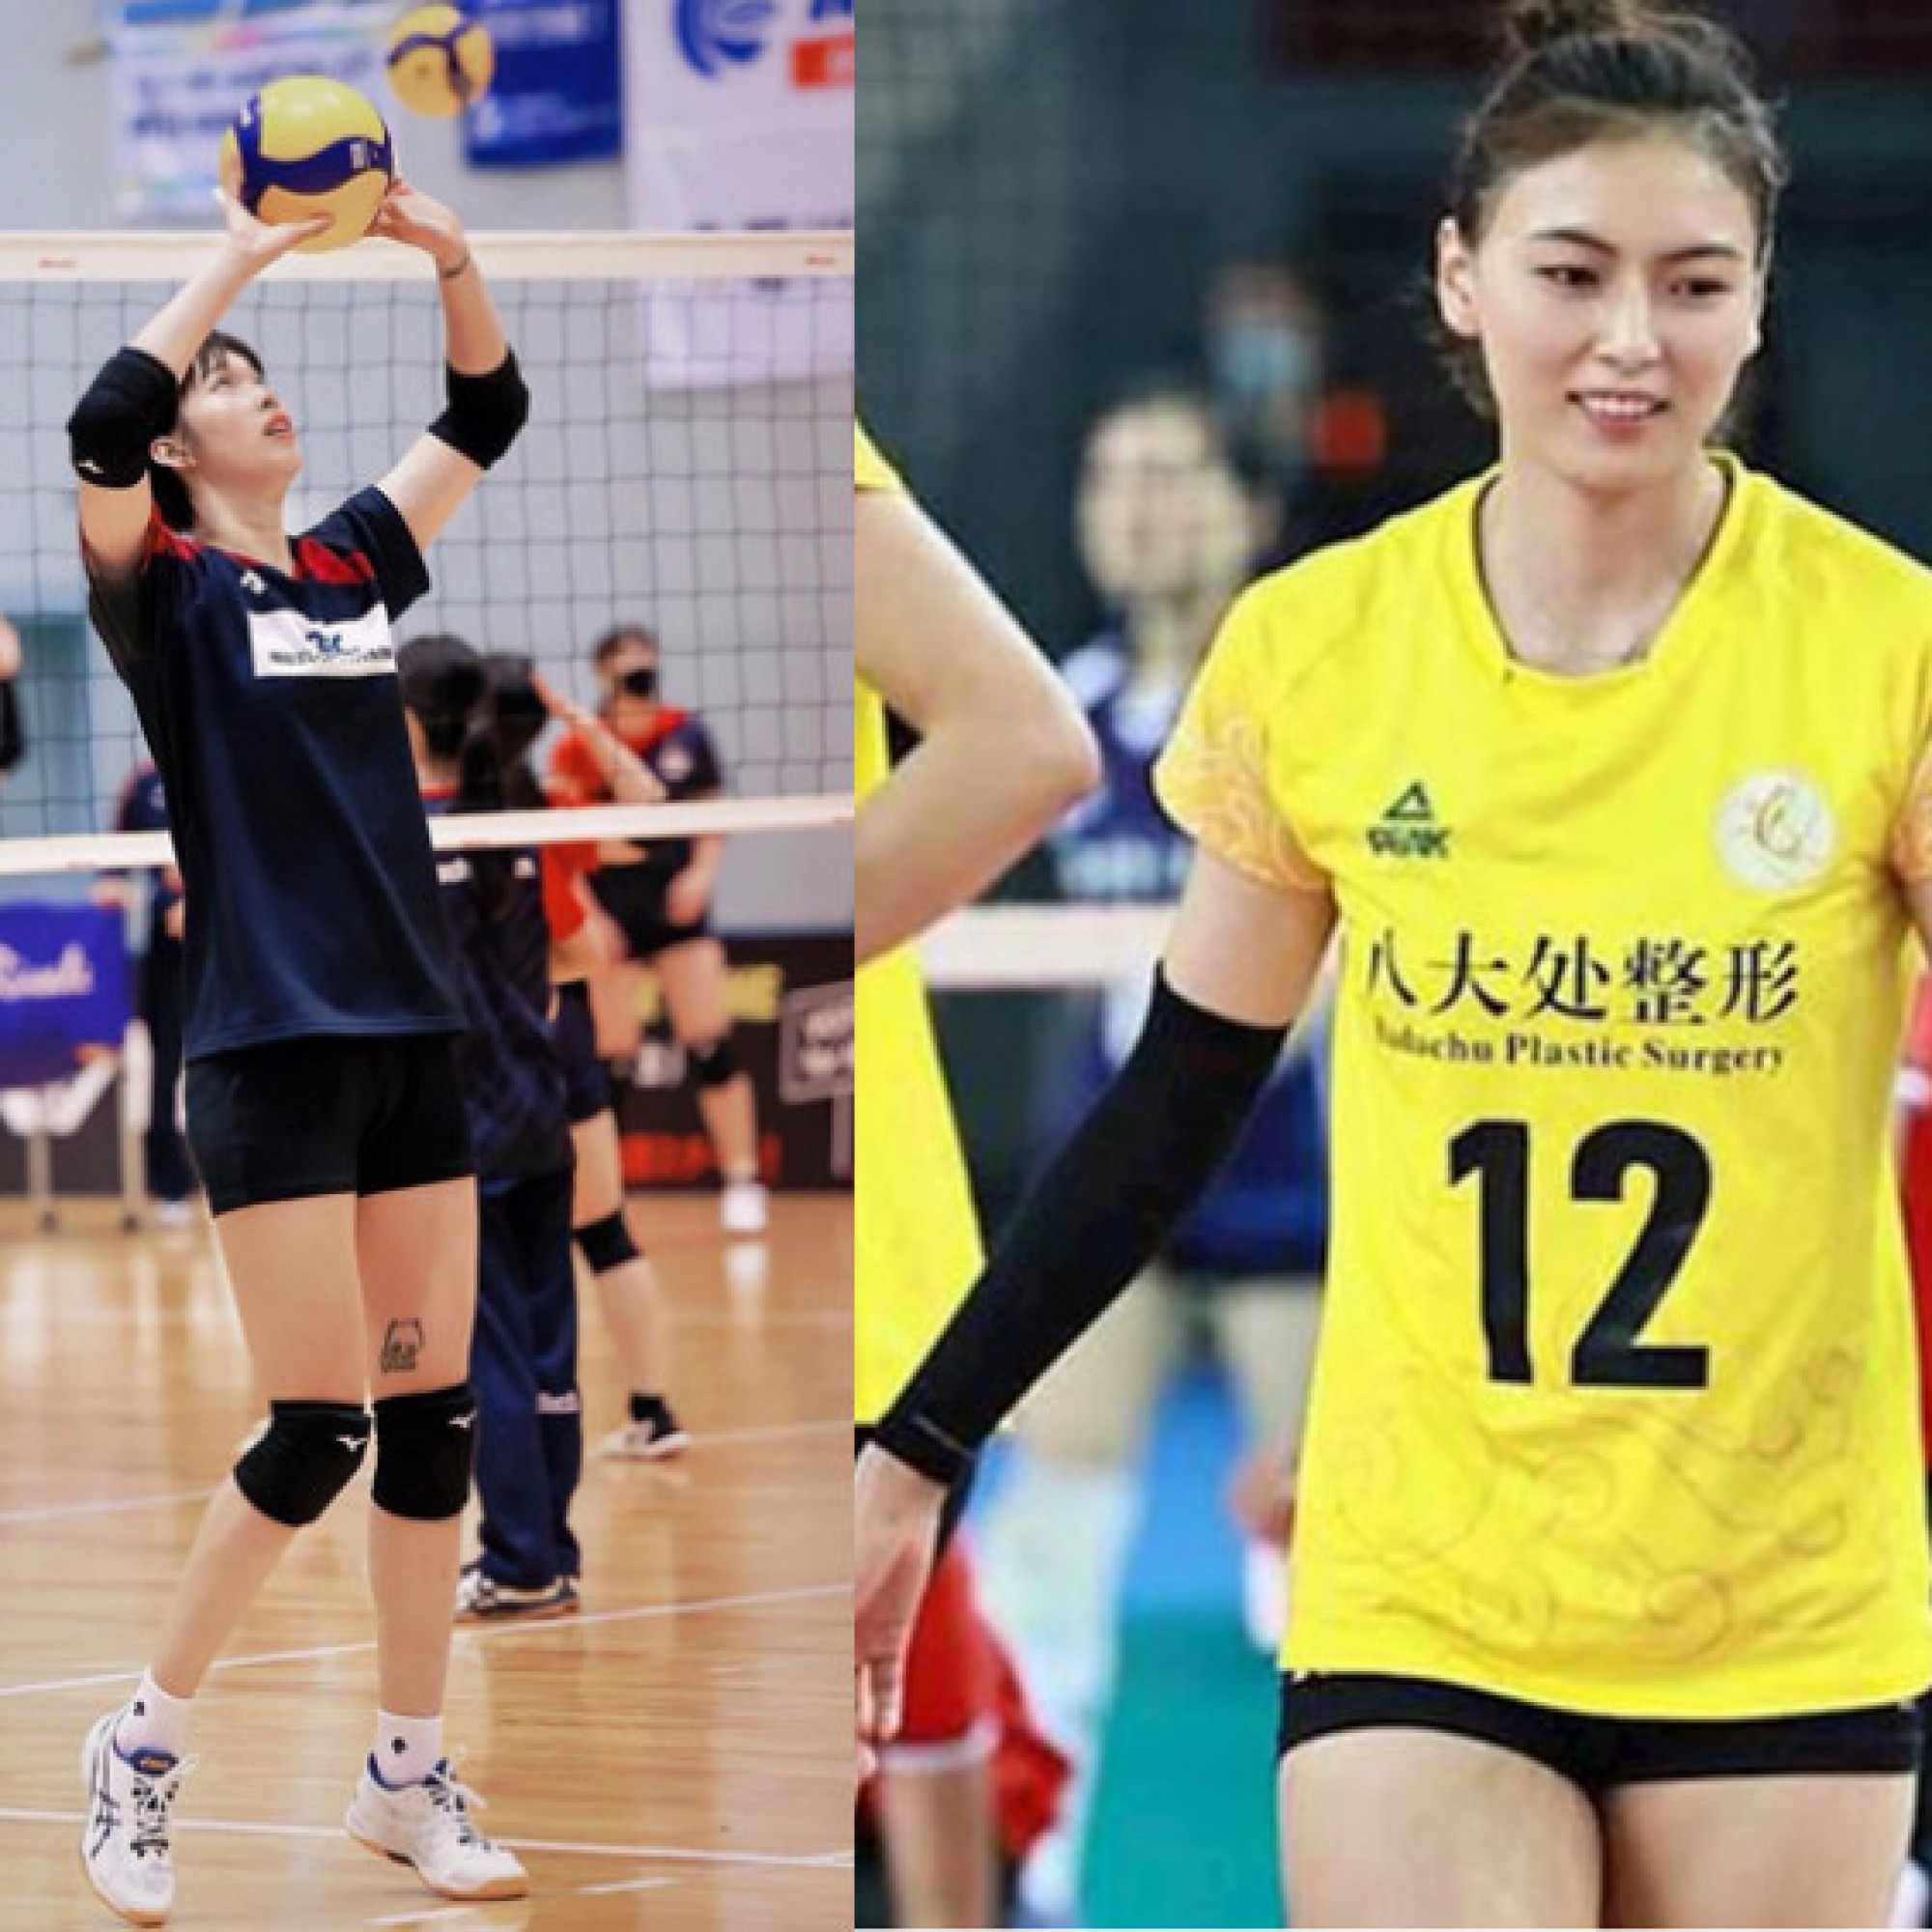 Thể thao - Hot girl bóng chuyền Trung Quốc ghi điểm kỷ lục vẫn thua Bích Tuyền